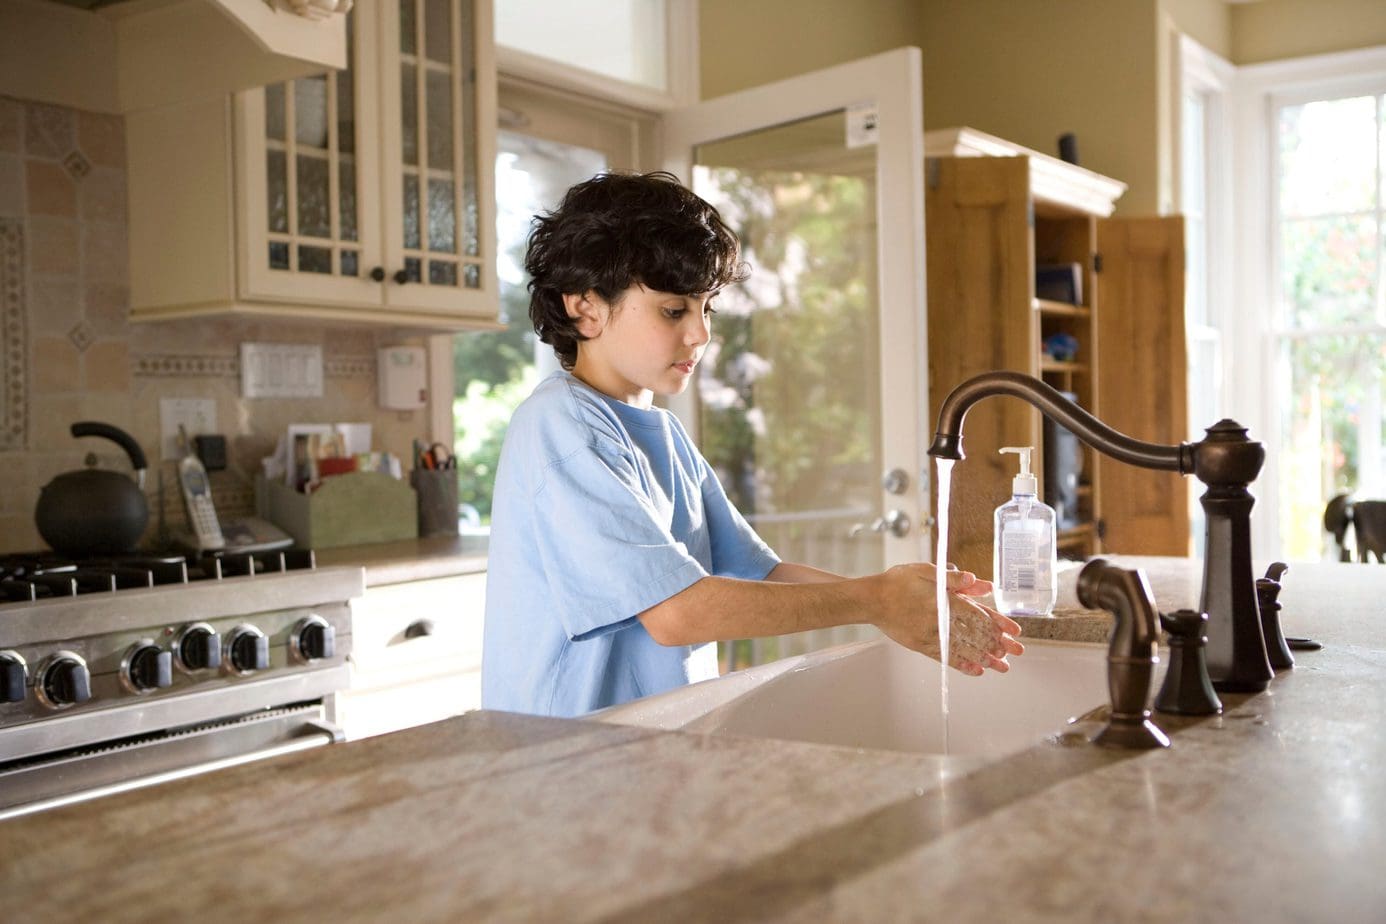 Obowiązki domowe, czyli jak nauczyć dziecko, by po sobie sprzątało?